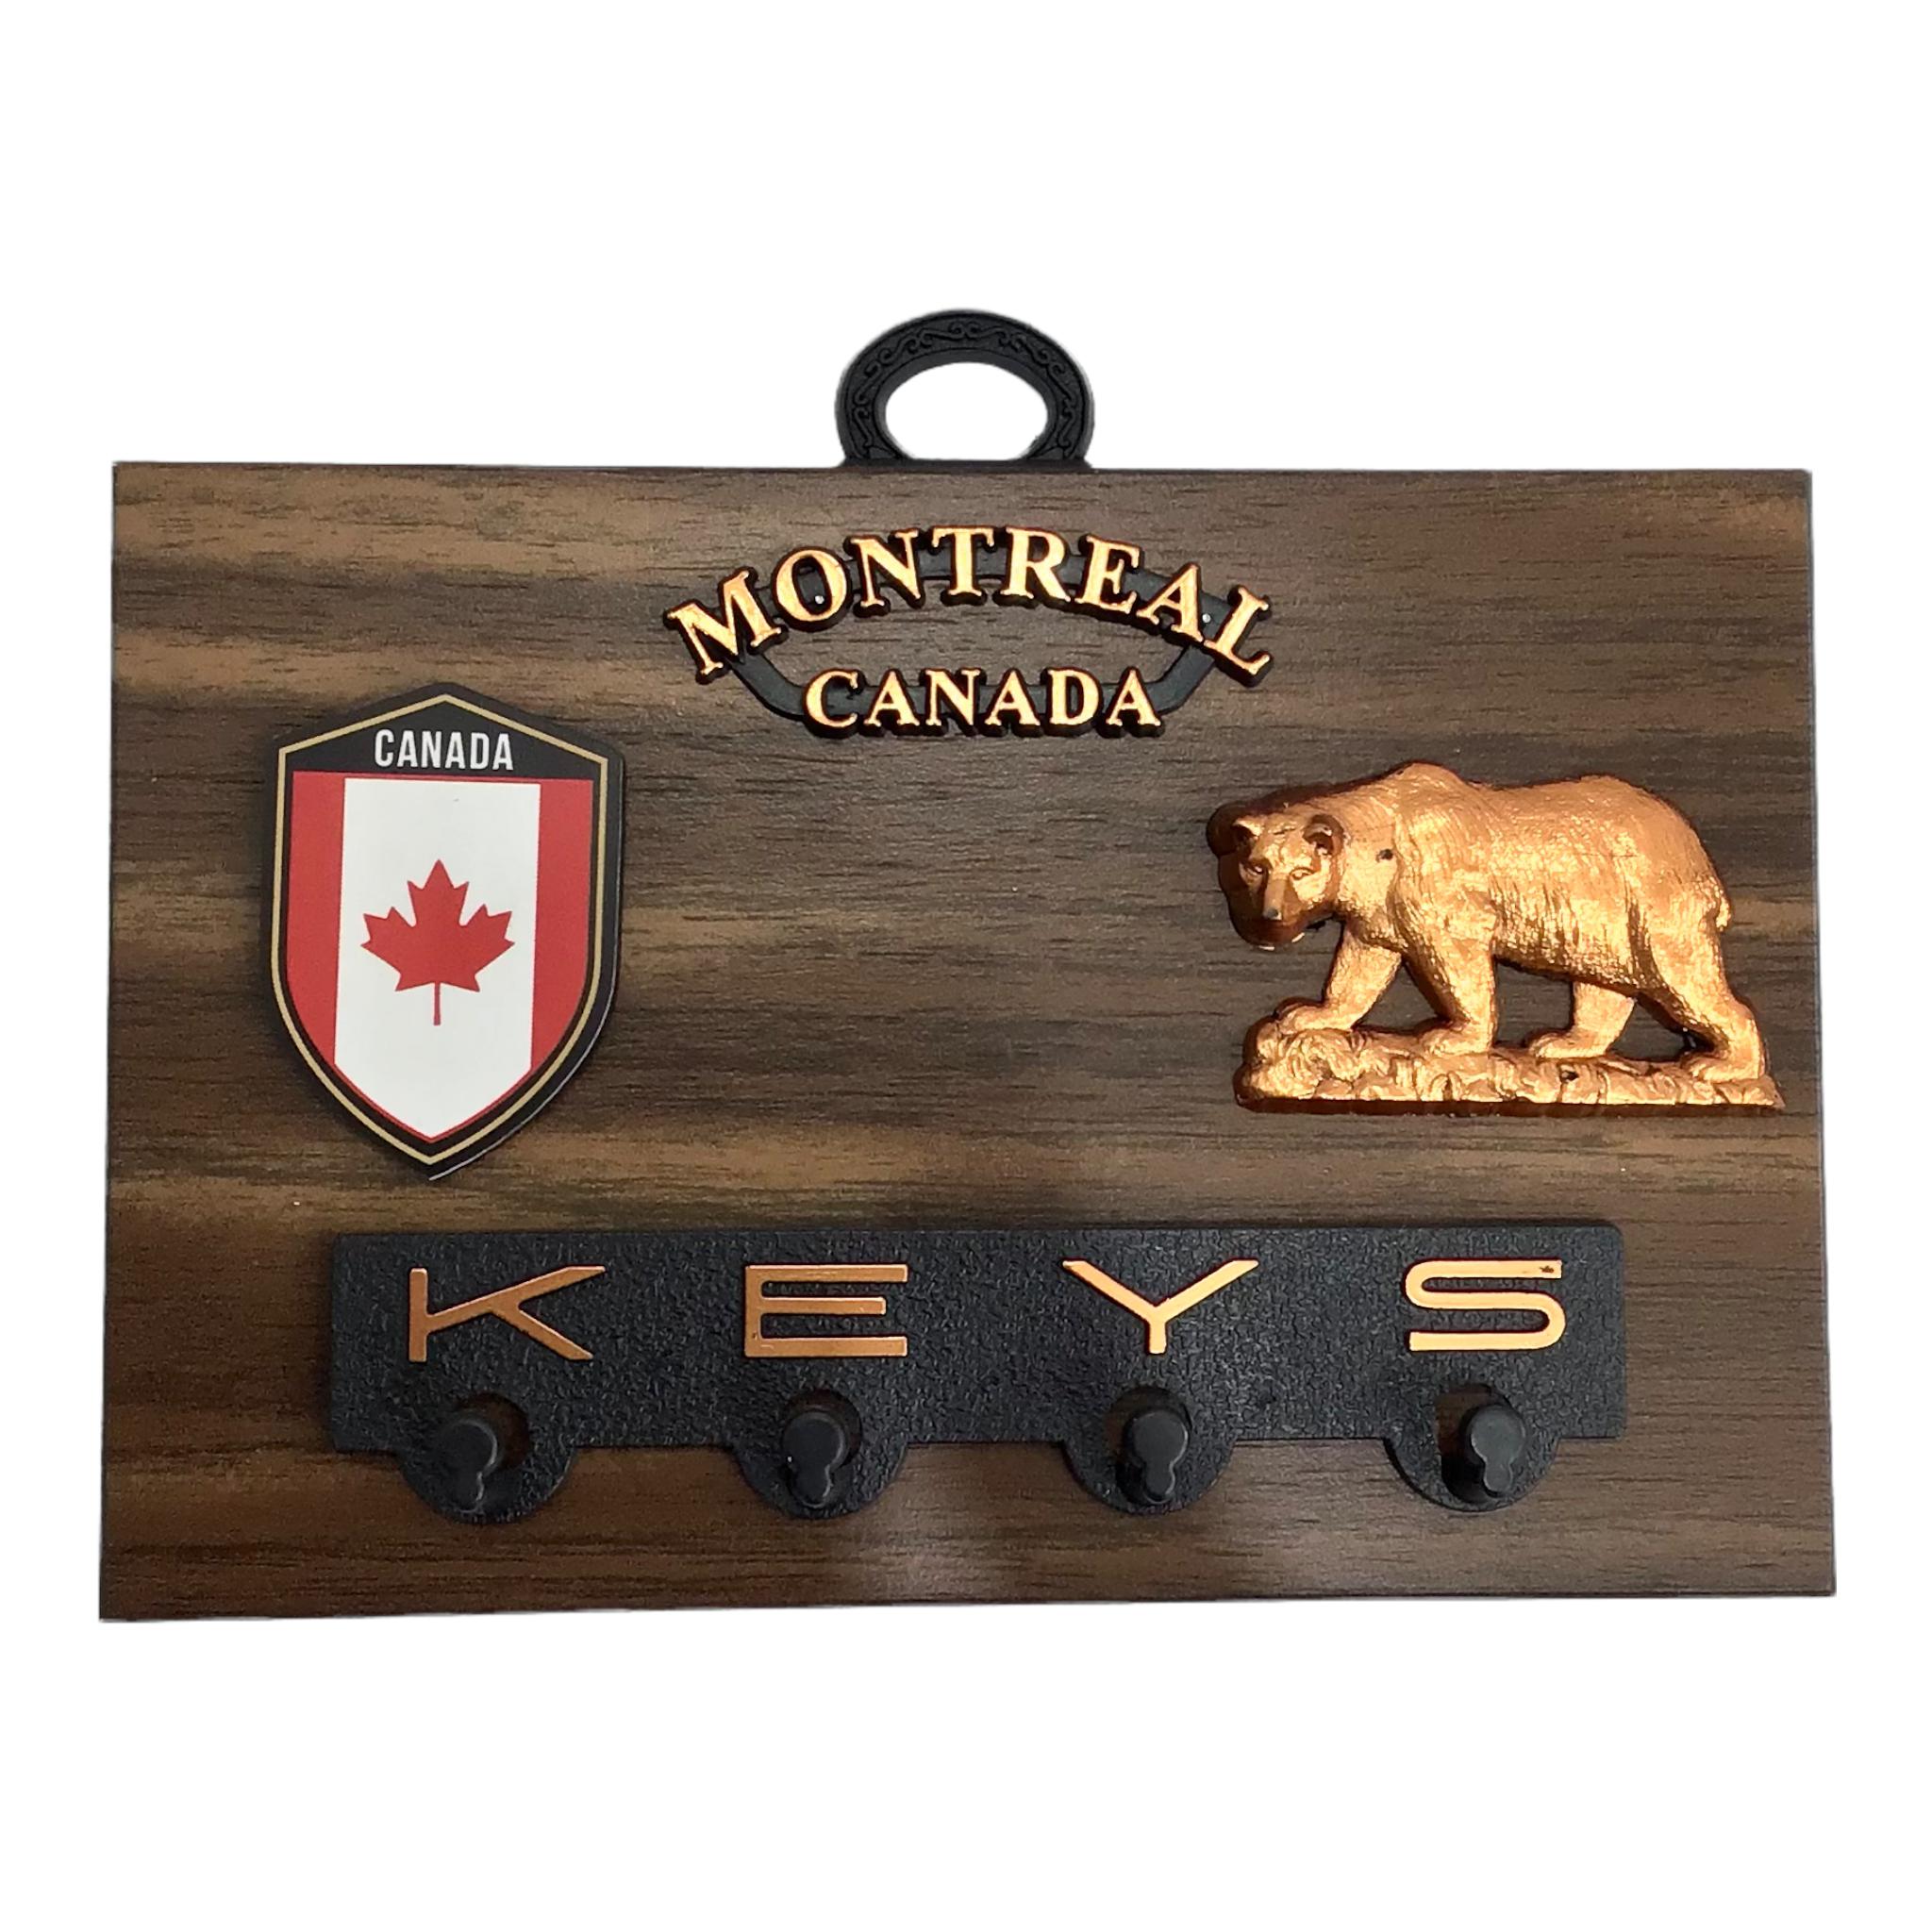 Montreal Canada Wooden Souvenir Wall Plaque 6” x 4” Canada Bear